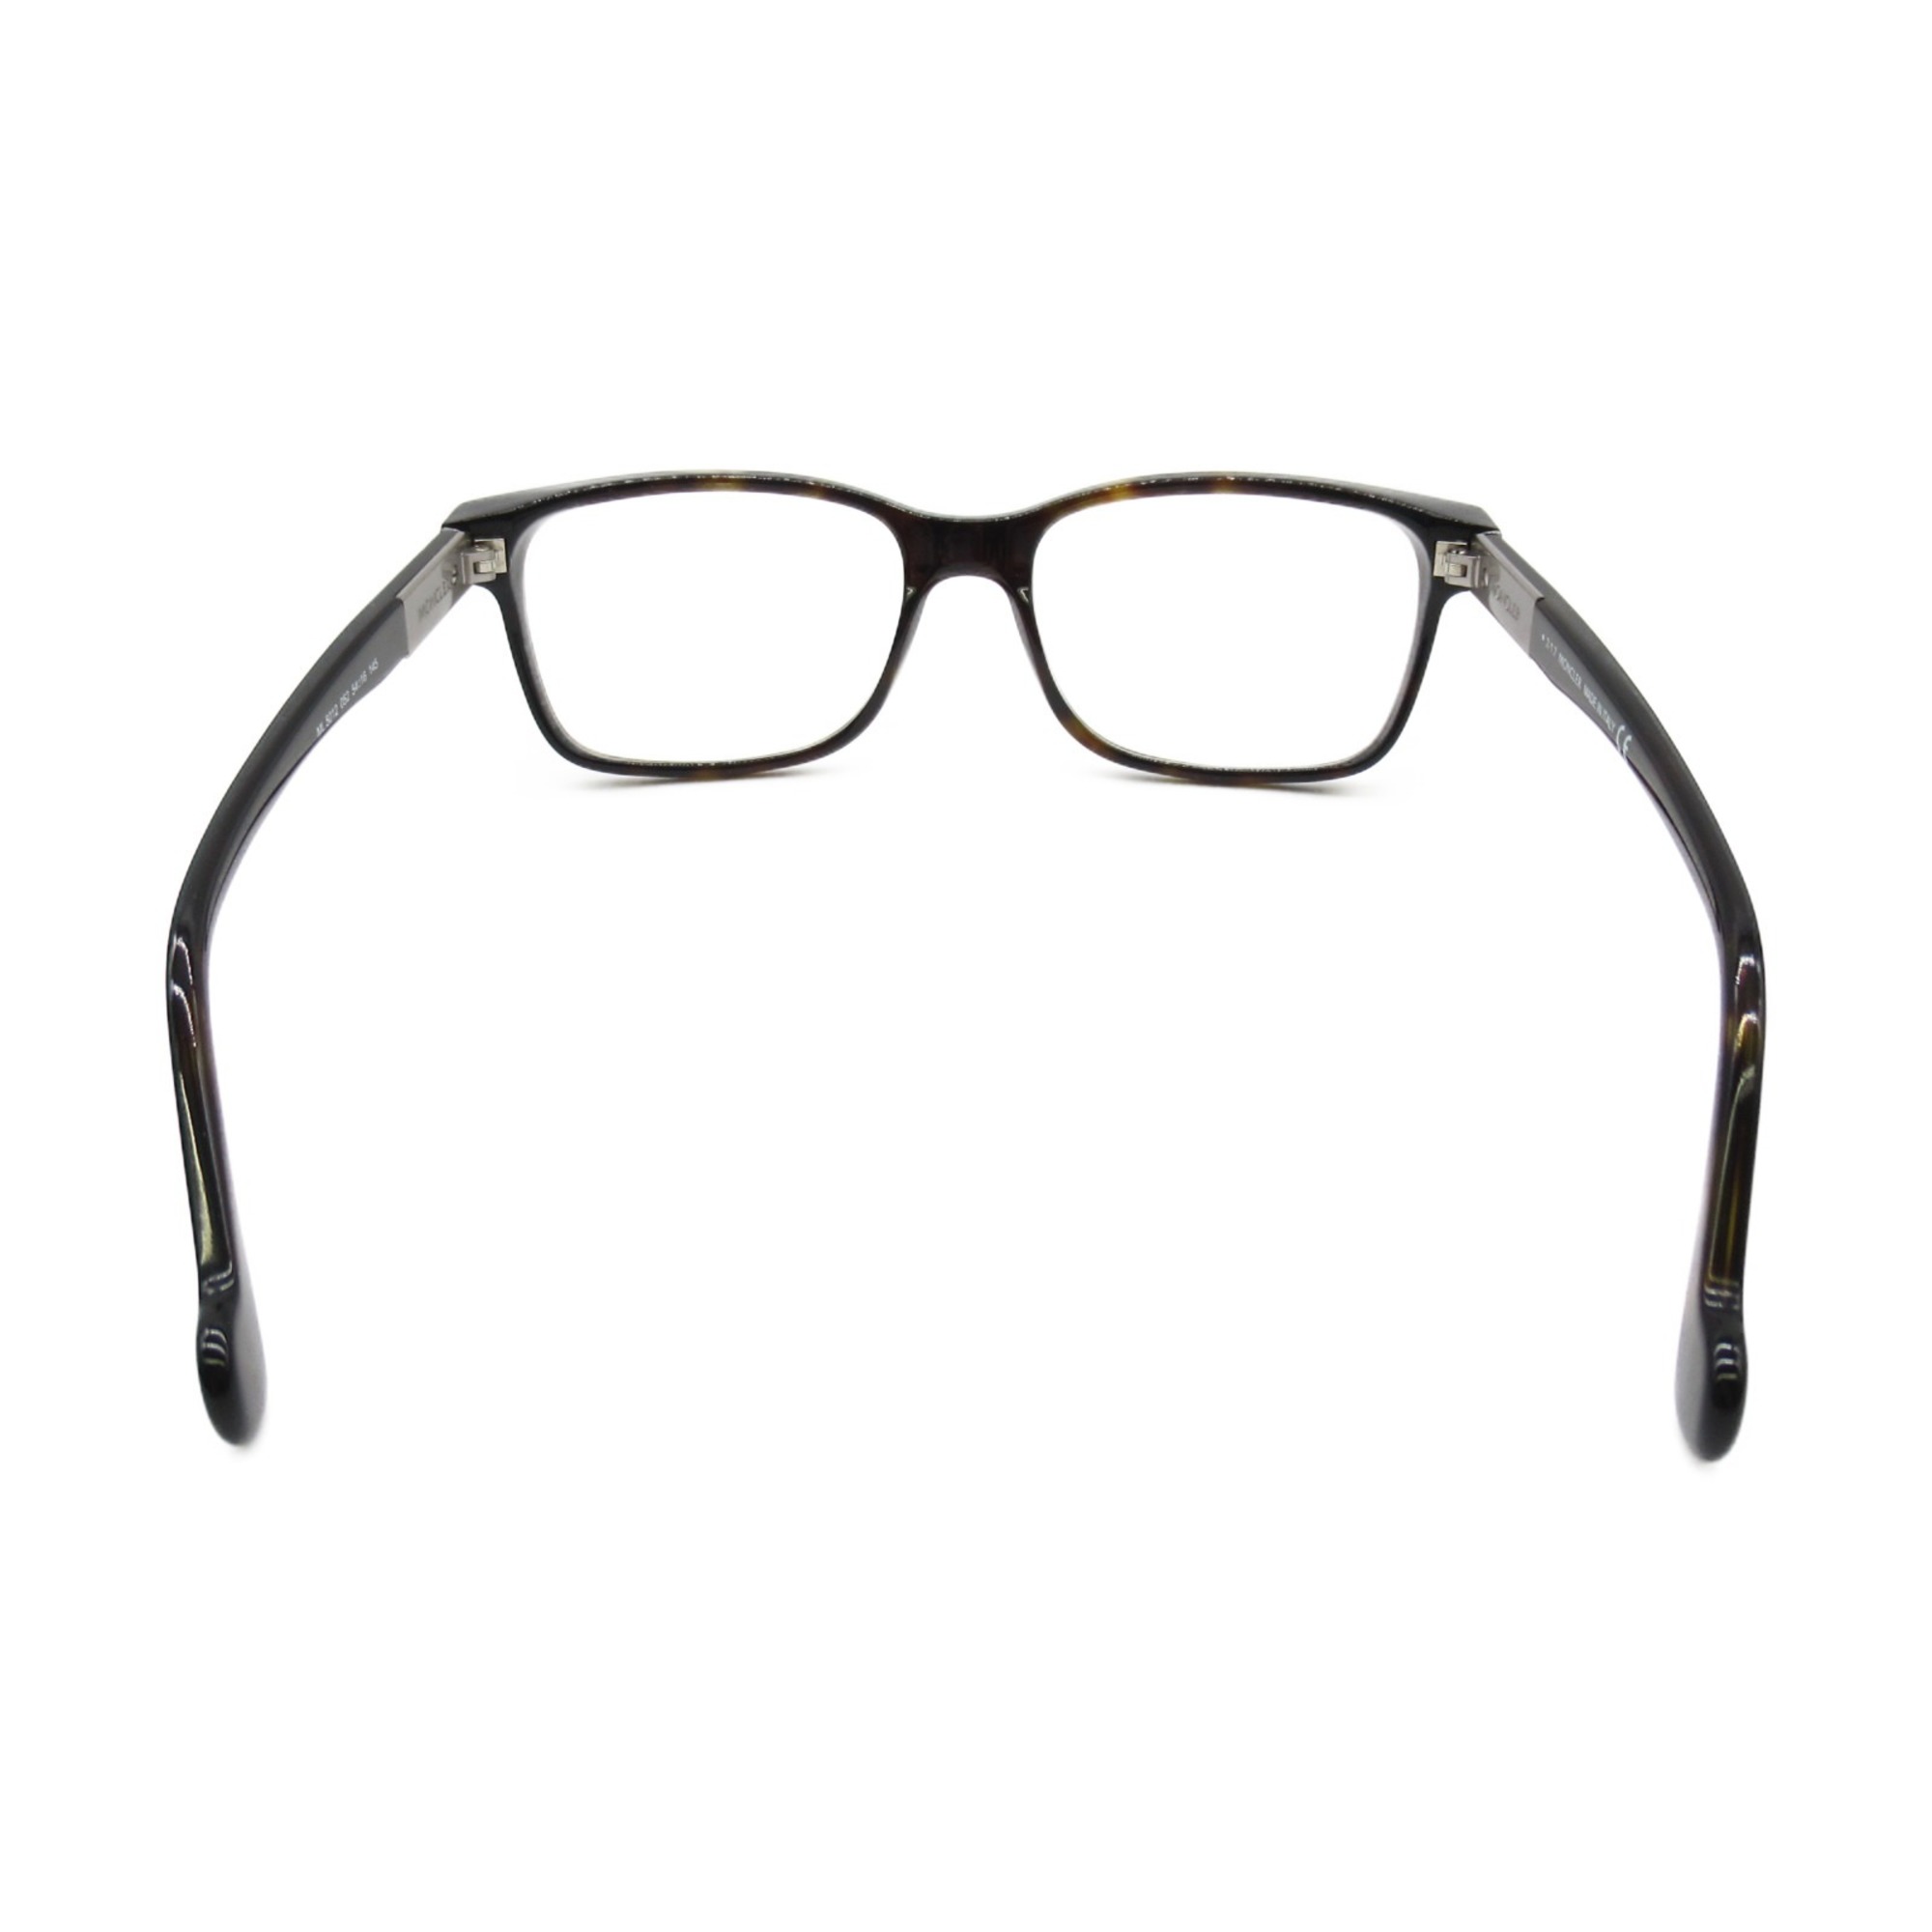 MONCLER Date Glasses Glasses Frame Brown Tortoise pattern Plastic 5012 052(54)